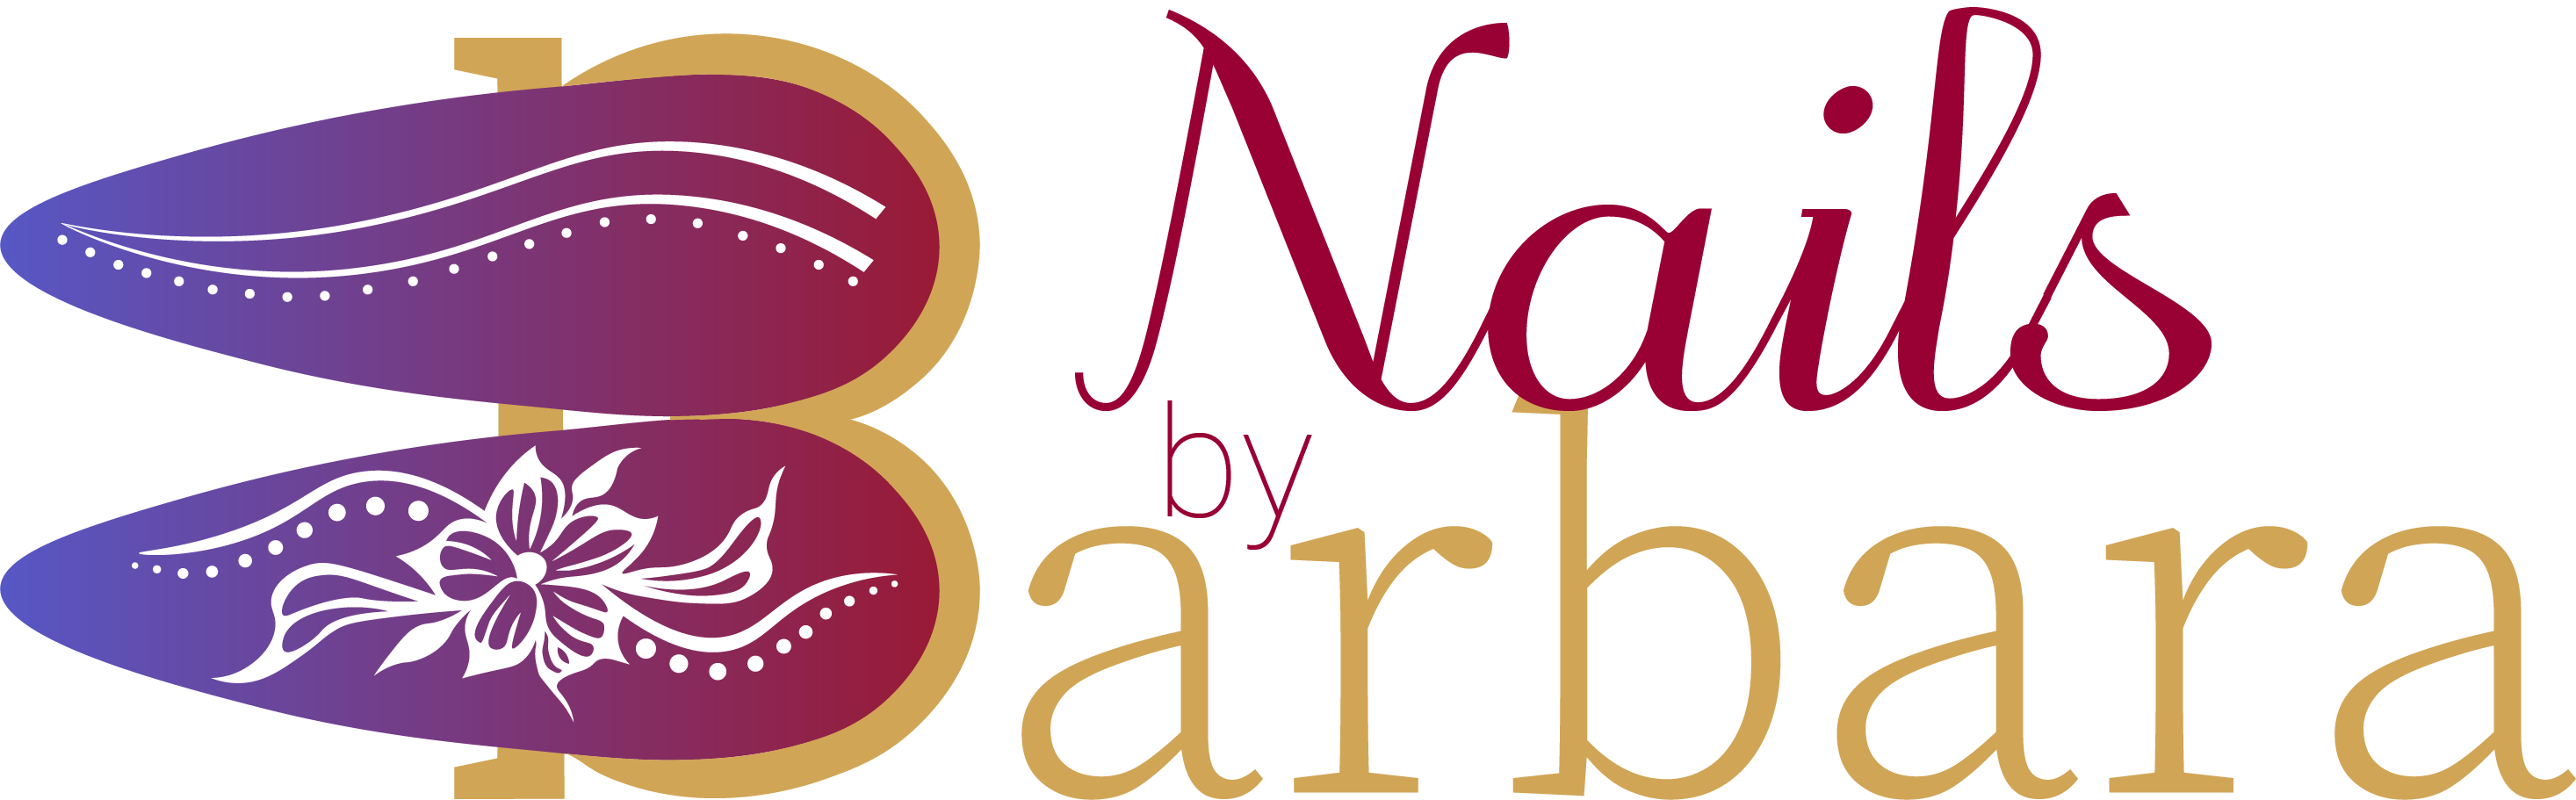 Nails by Barbara